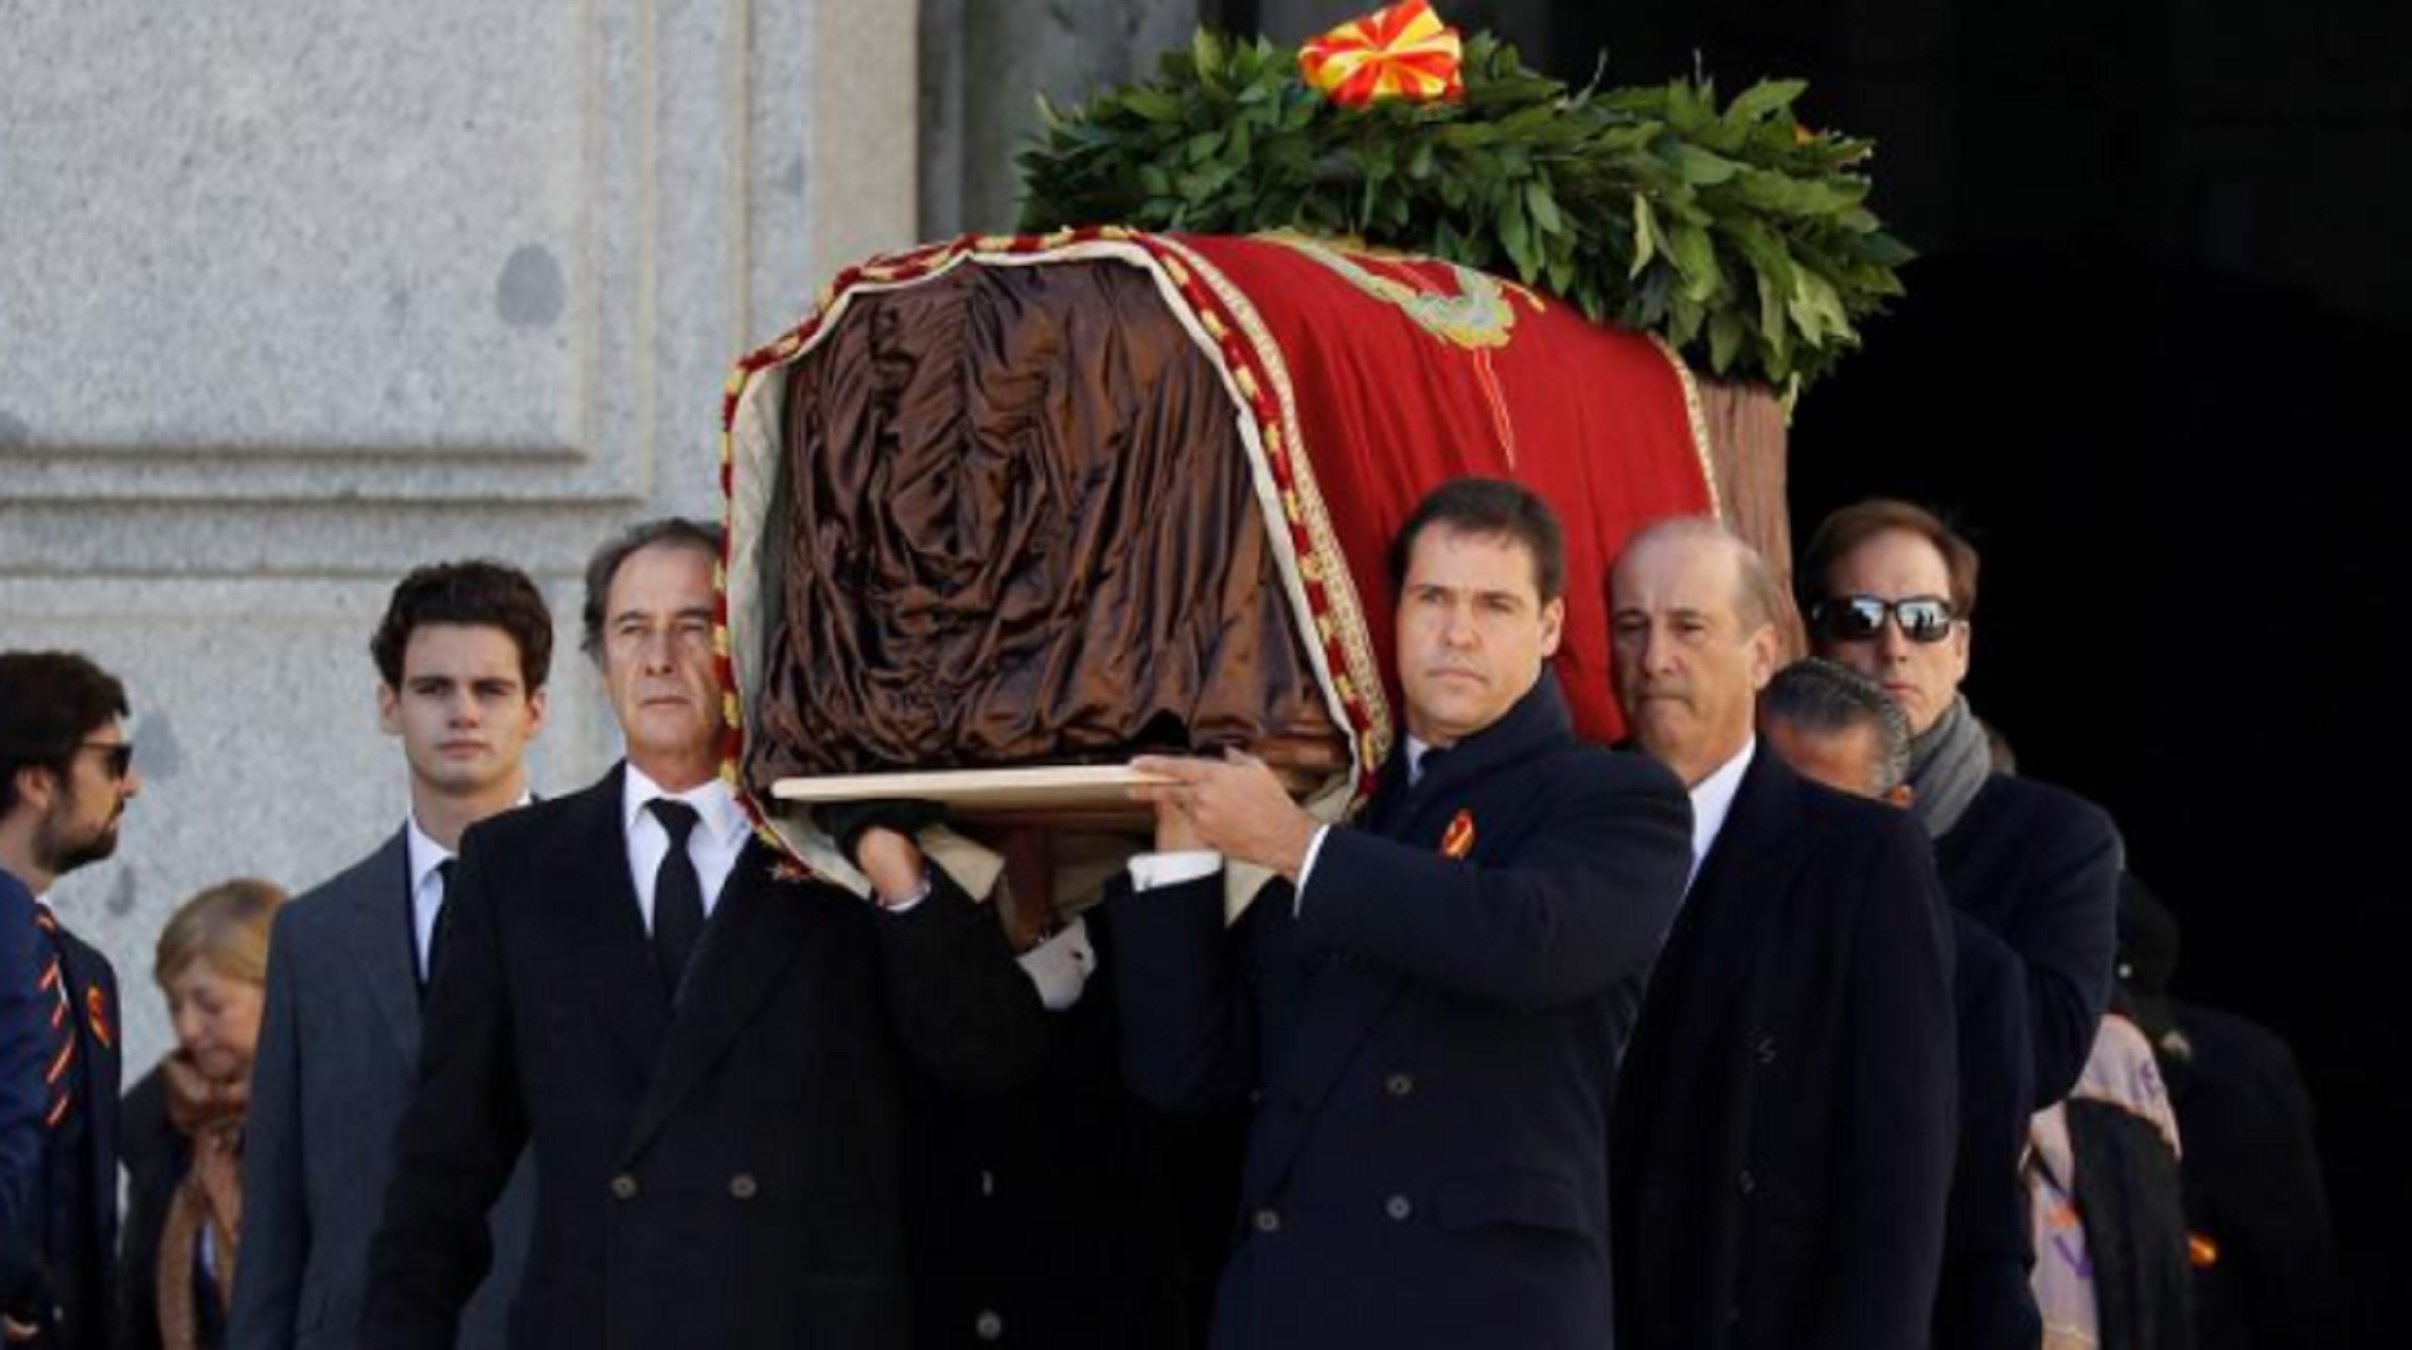 Un familiar del dictador Francisco Franco desobedece y pone en riesgo su salud